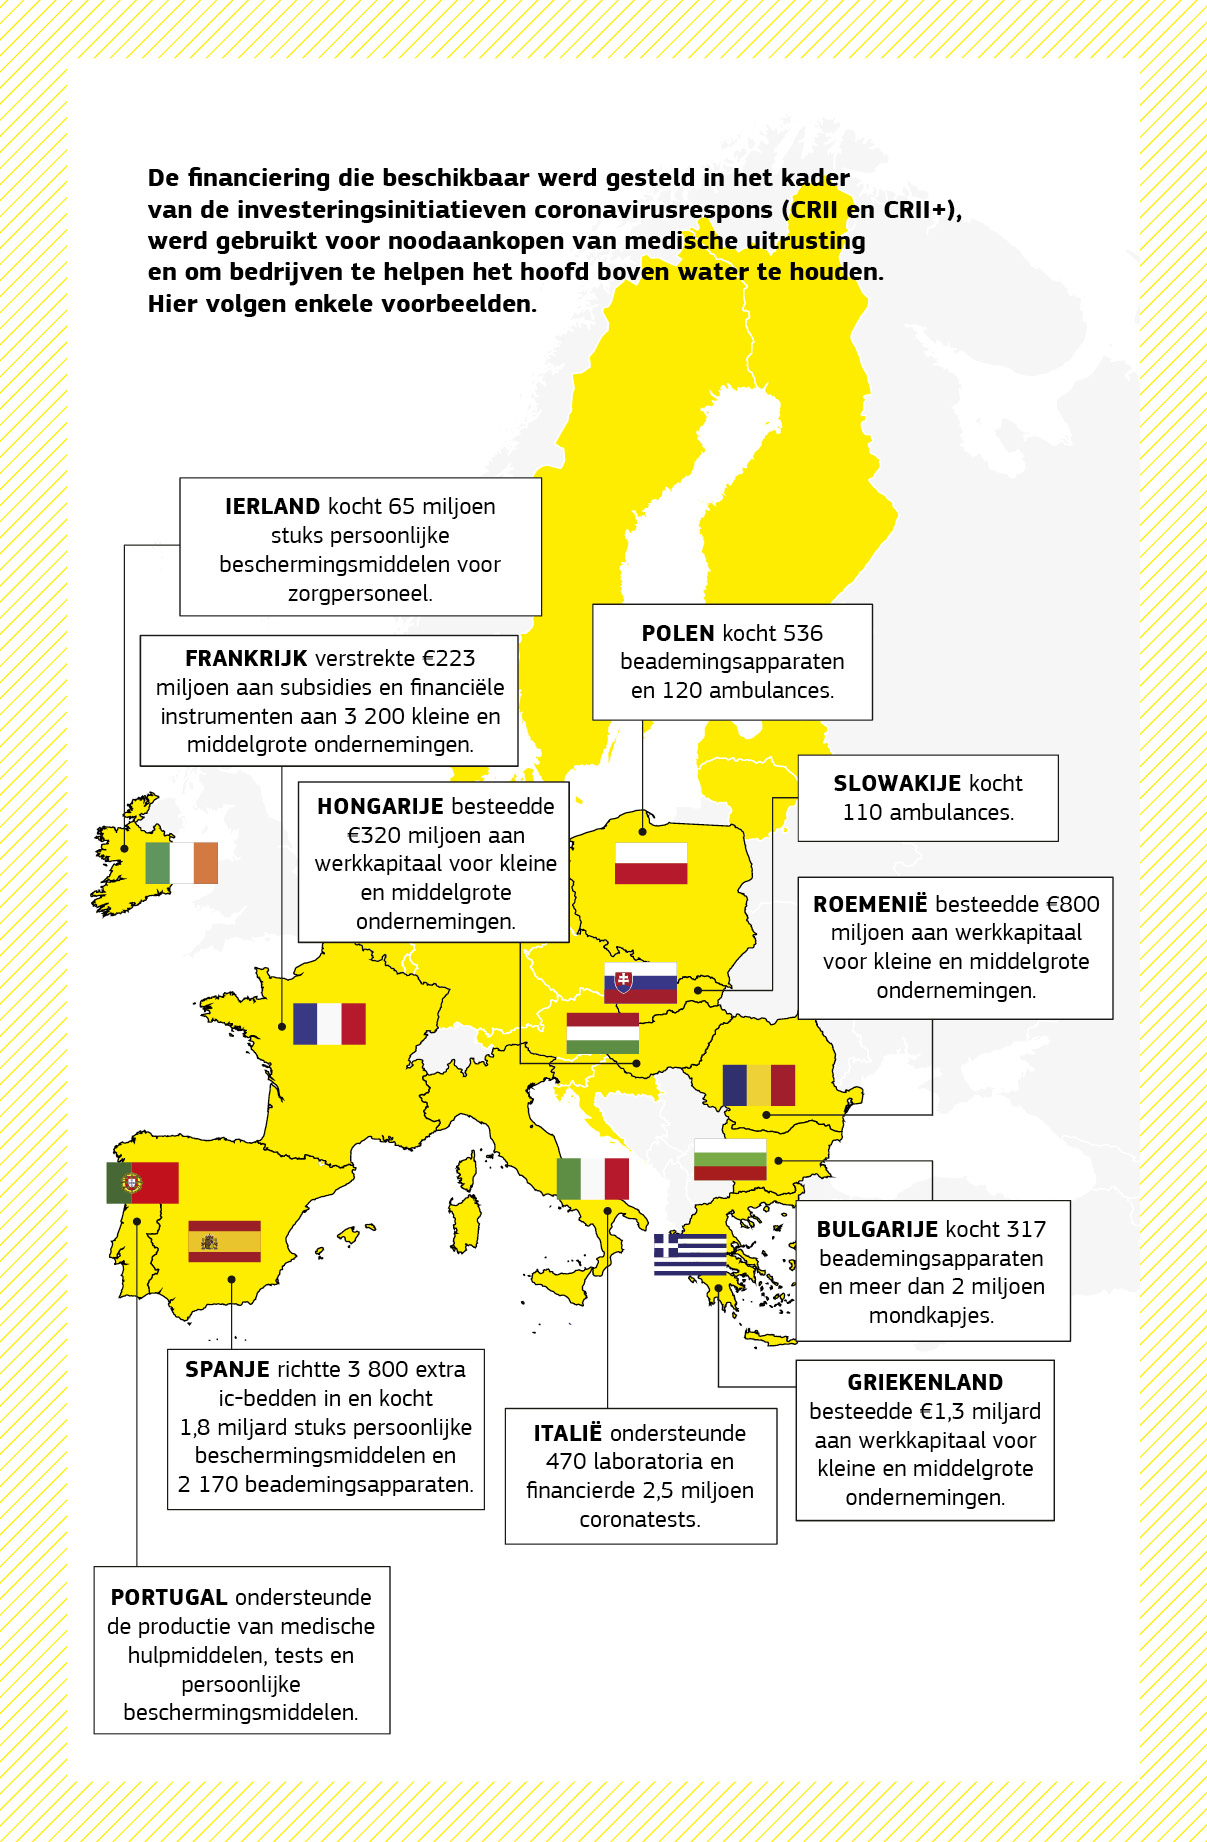 Kaart met projecten in verschillende lidstaten die werden gefinancierd door de investeringsinitiatieven coronavirusrespons (CRII en CRII+). 